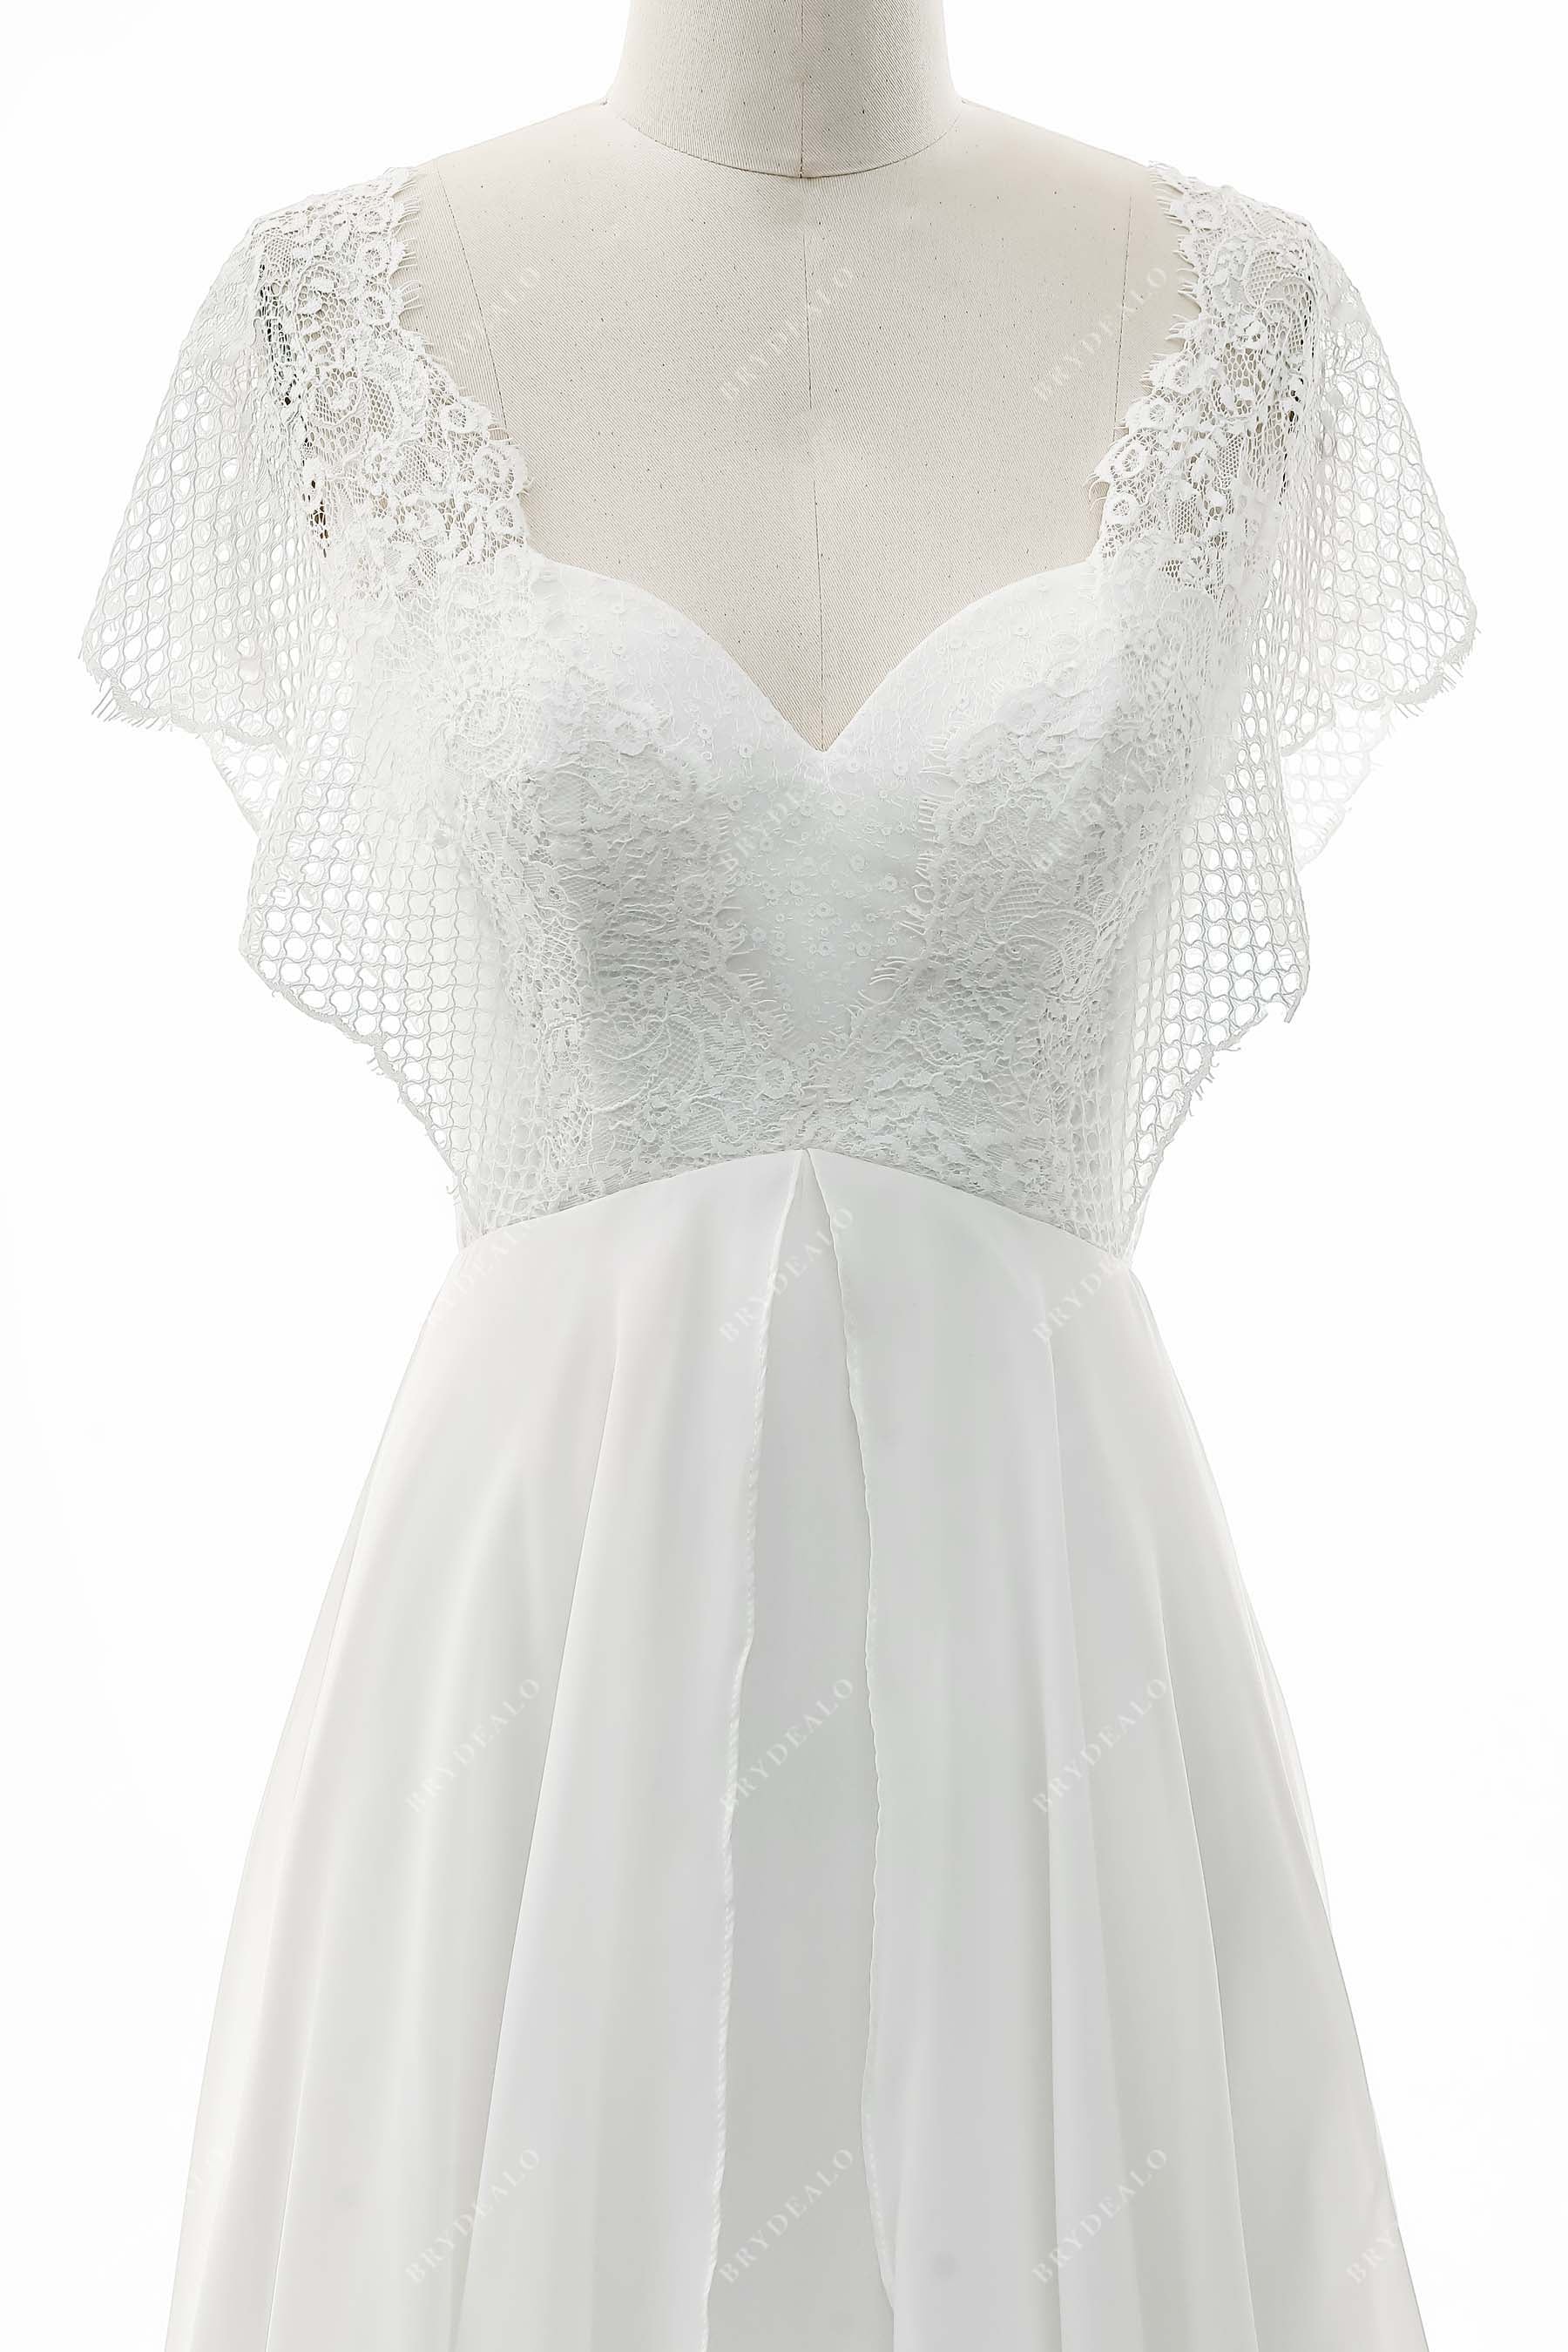 Batwing Sleeve Lace Chiffon Wedding Dress